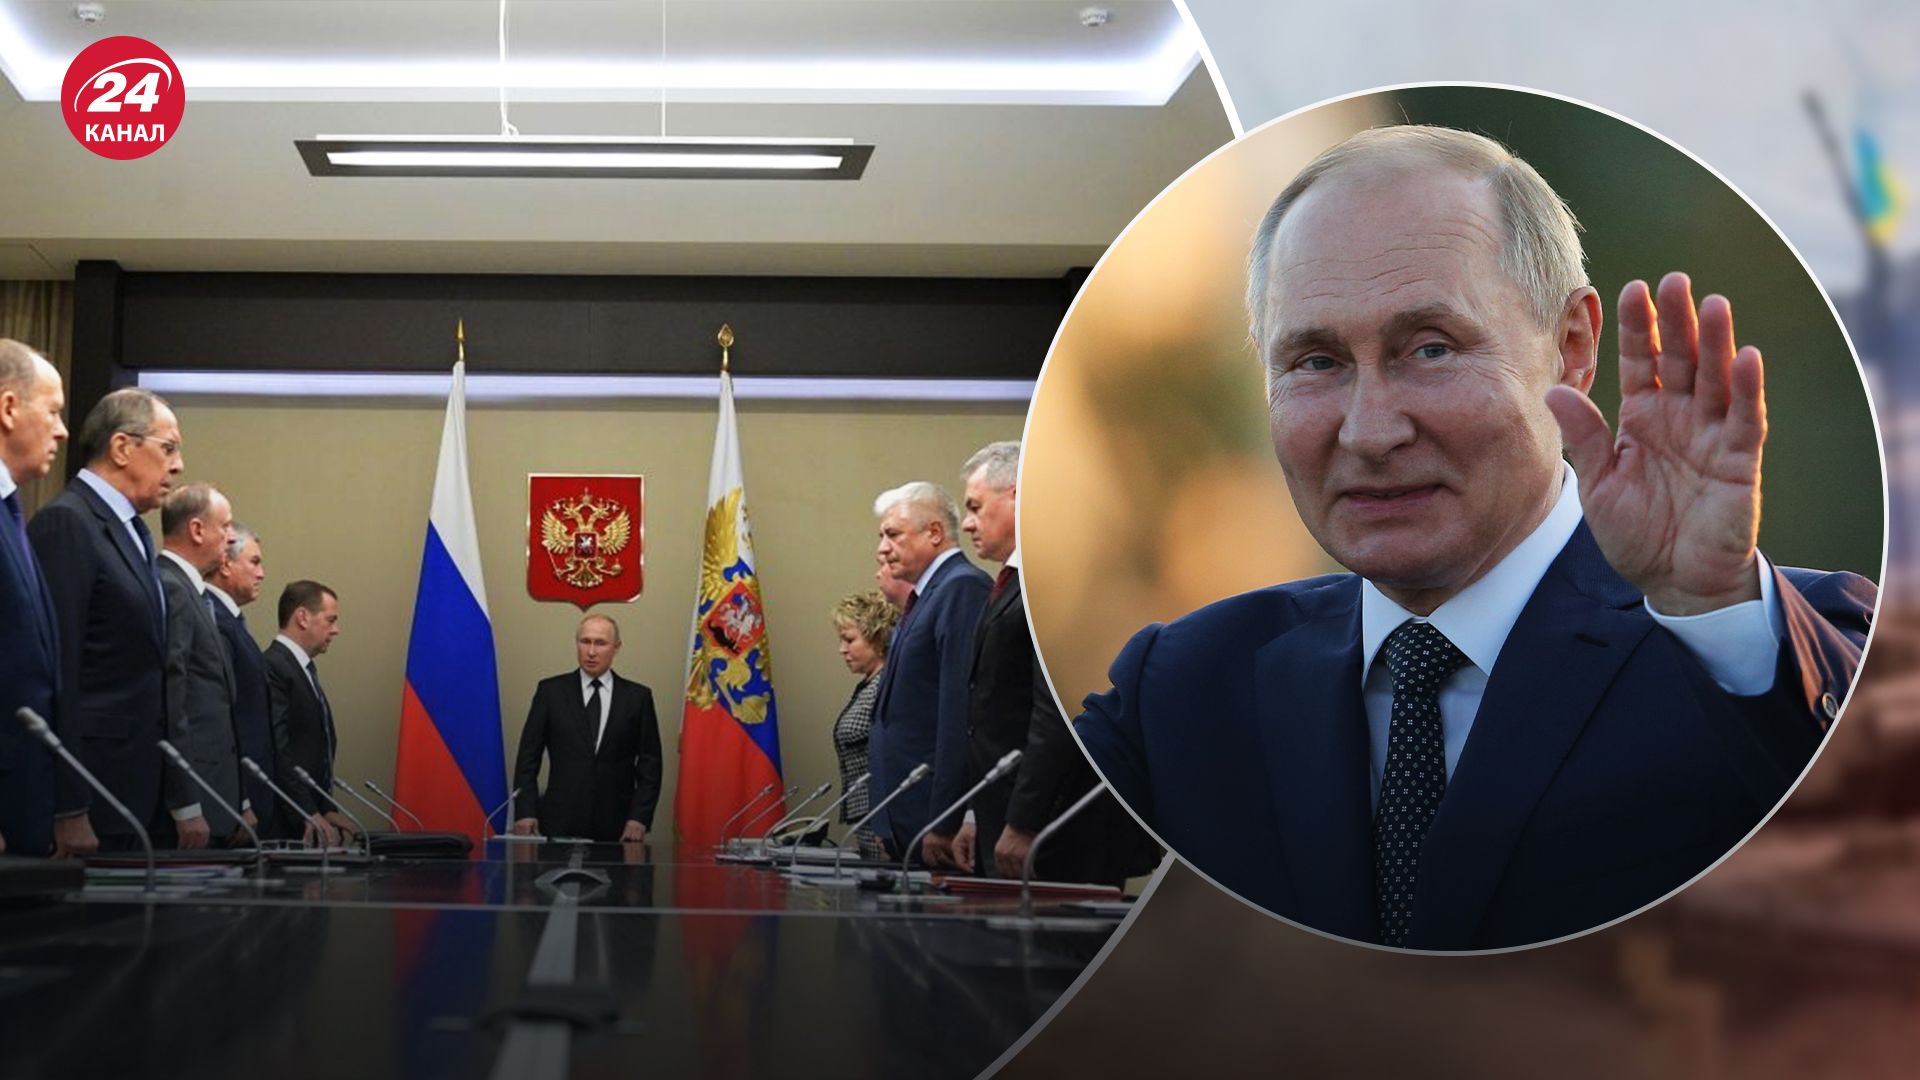 Выборы в России - с чем Путин будет идти в президенты и какие победы ожидает паства - 24 Канал